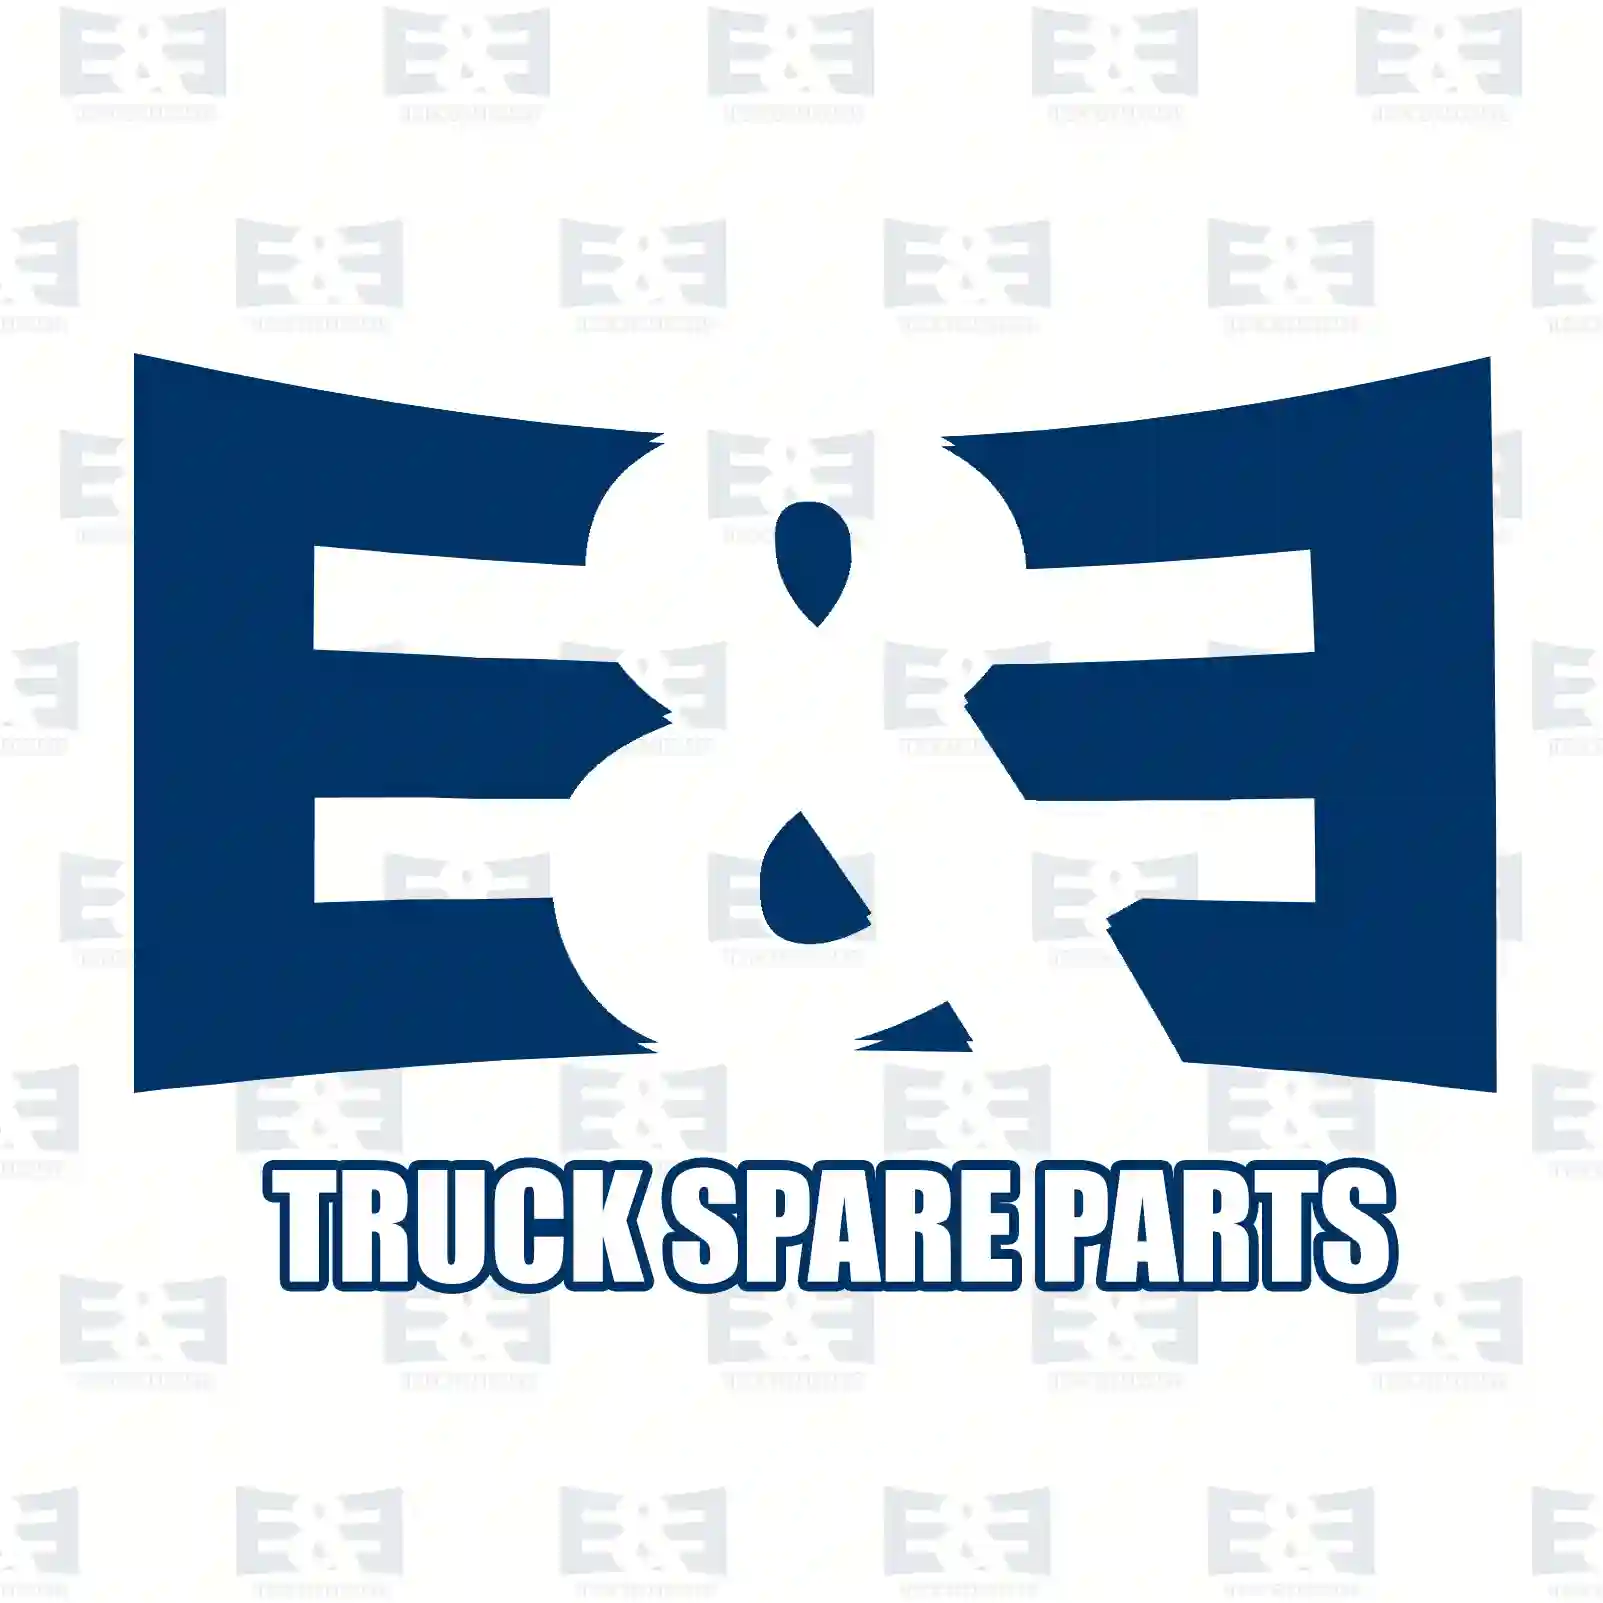 Brake disc, 2E2296328, 02991646, 07182299, 2991646, 7182299, , , , , , ||  2E2296328 E&E Truck Spare Parts | Truck Spare Parts, Auotomotive Spare Parts Brake disc, 2E2296328, 02991646, 07182299, 2991646, 7182299, , , , , , ||  2E2296328 E&E Truck Spare Parts | Truck Spare Parts, Auotomotive Spare Parts